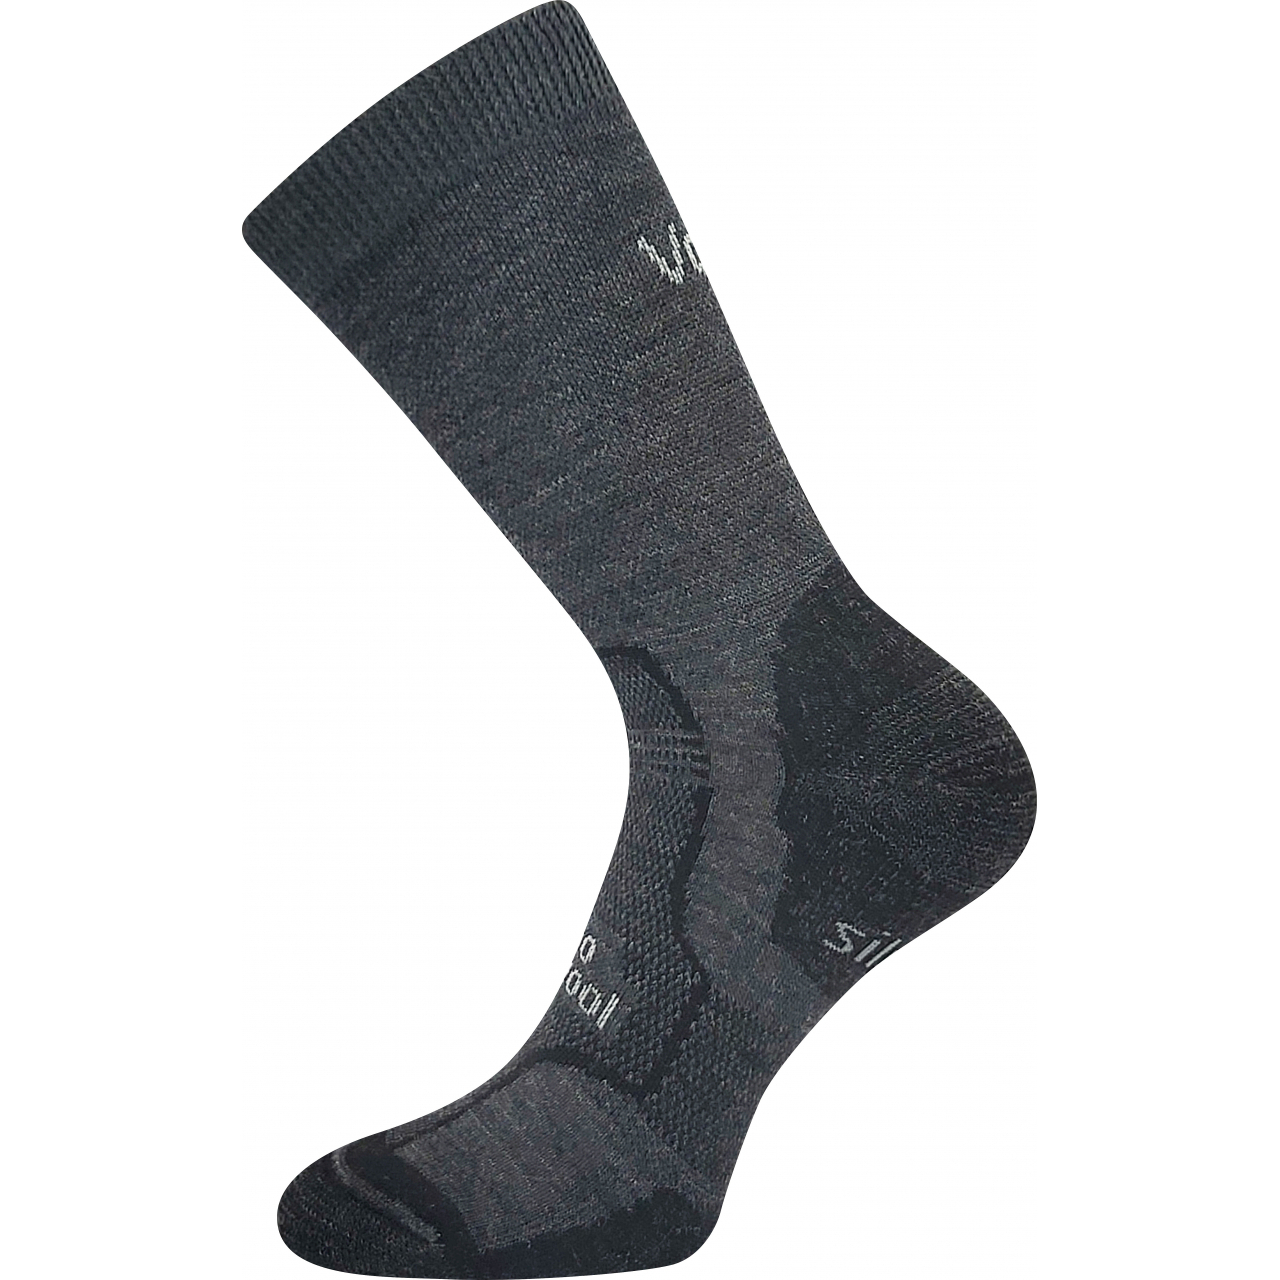 Ponožky unisex zimní Voxx Granit - tmavě šedé, 43-46